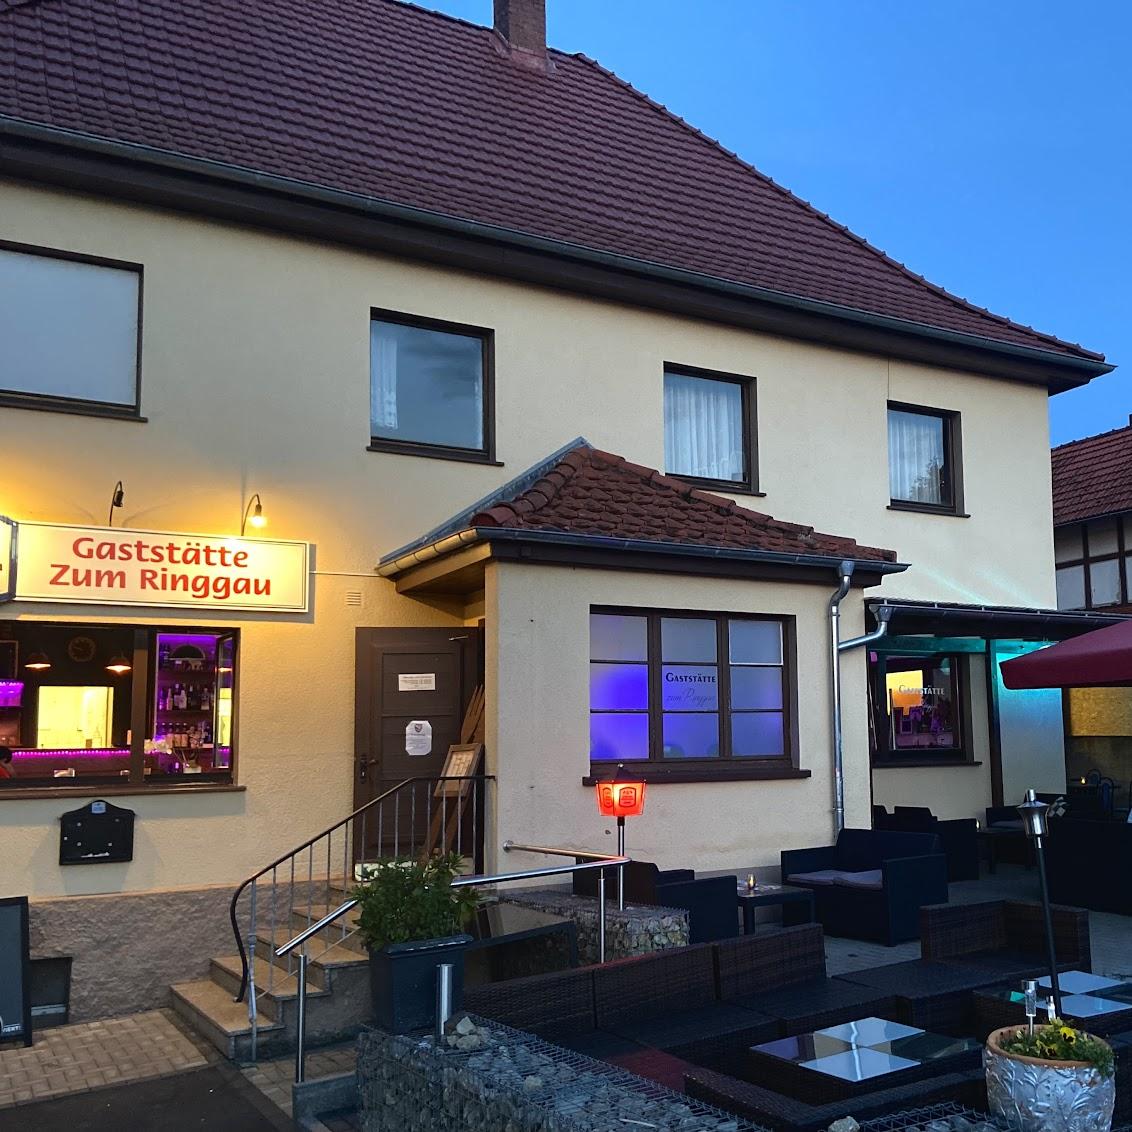 Restaurant "Gaststätte Zum" in Ringgau